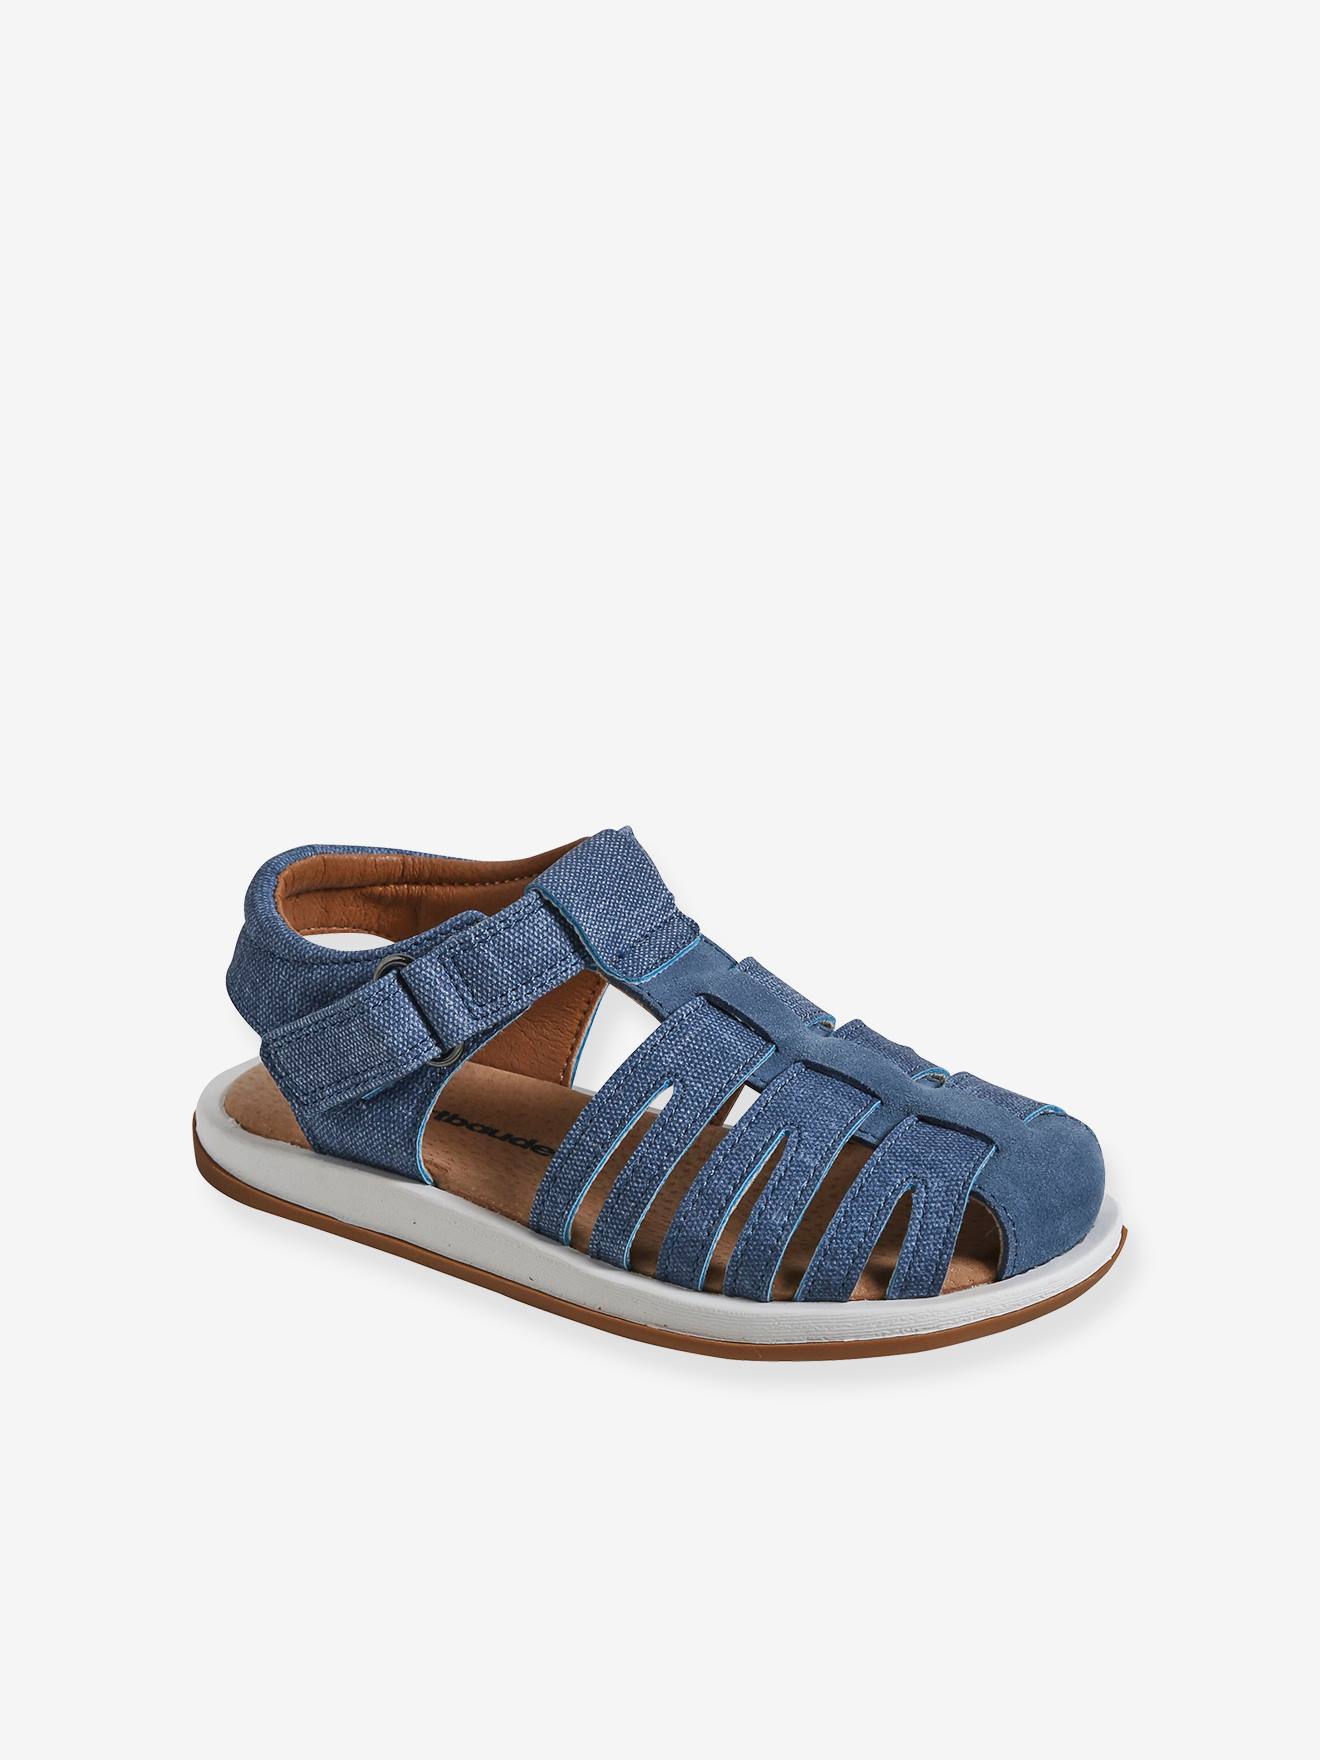 sandales scratchées enfant collection maternelle bleu jean